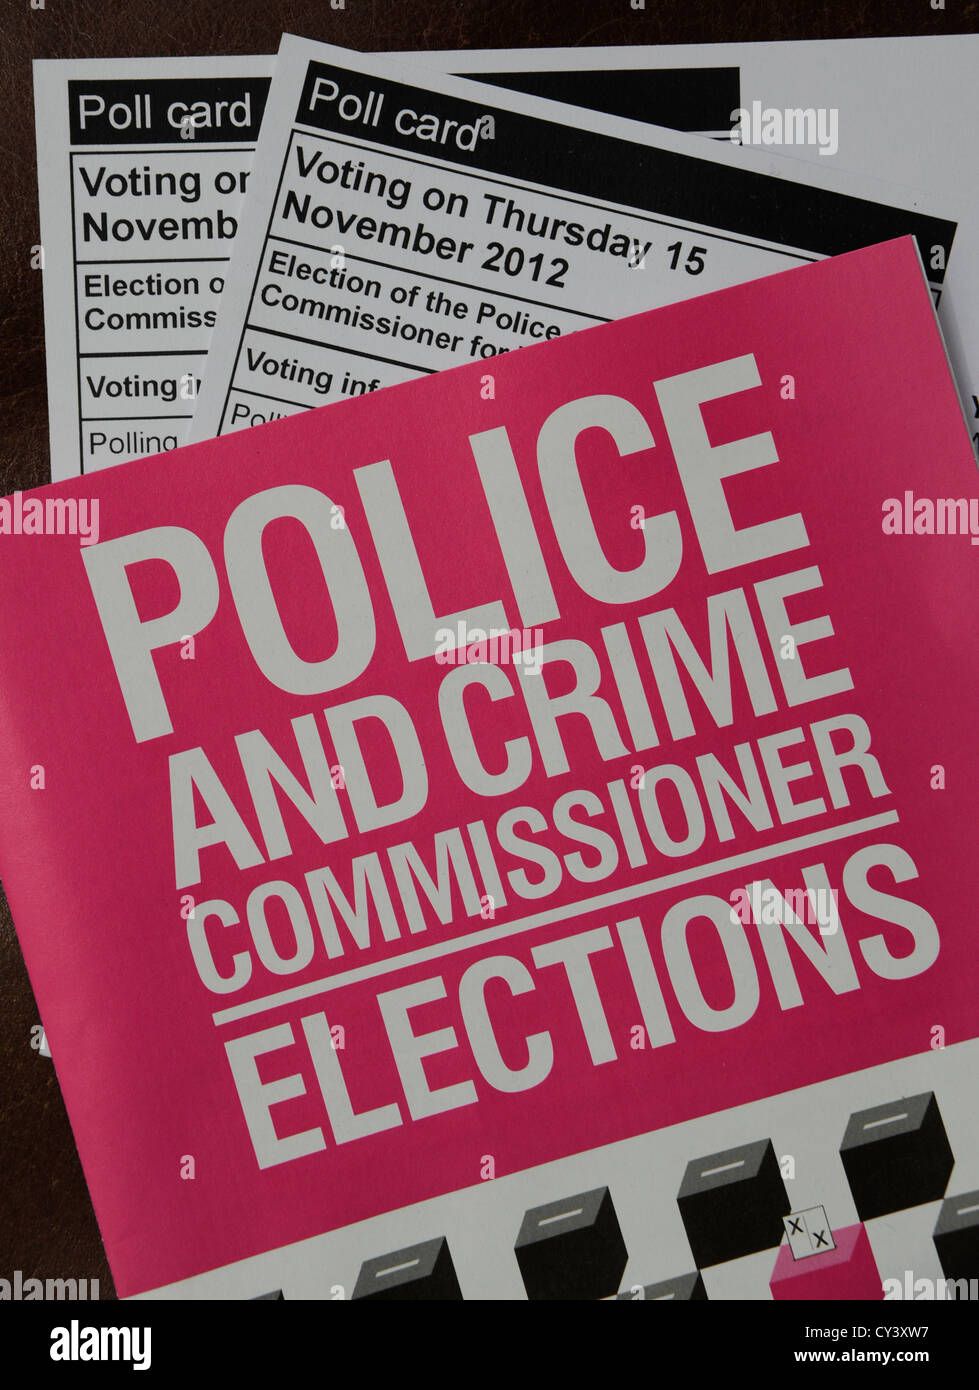 Le commissaire de police et le crime livret Élections avec envoi de cartes pour les élections du 15 novembre Banque D'Images